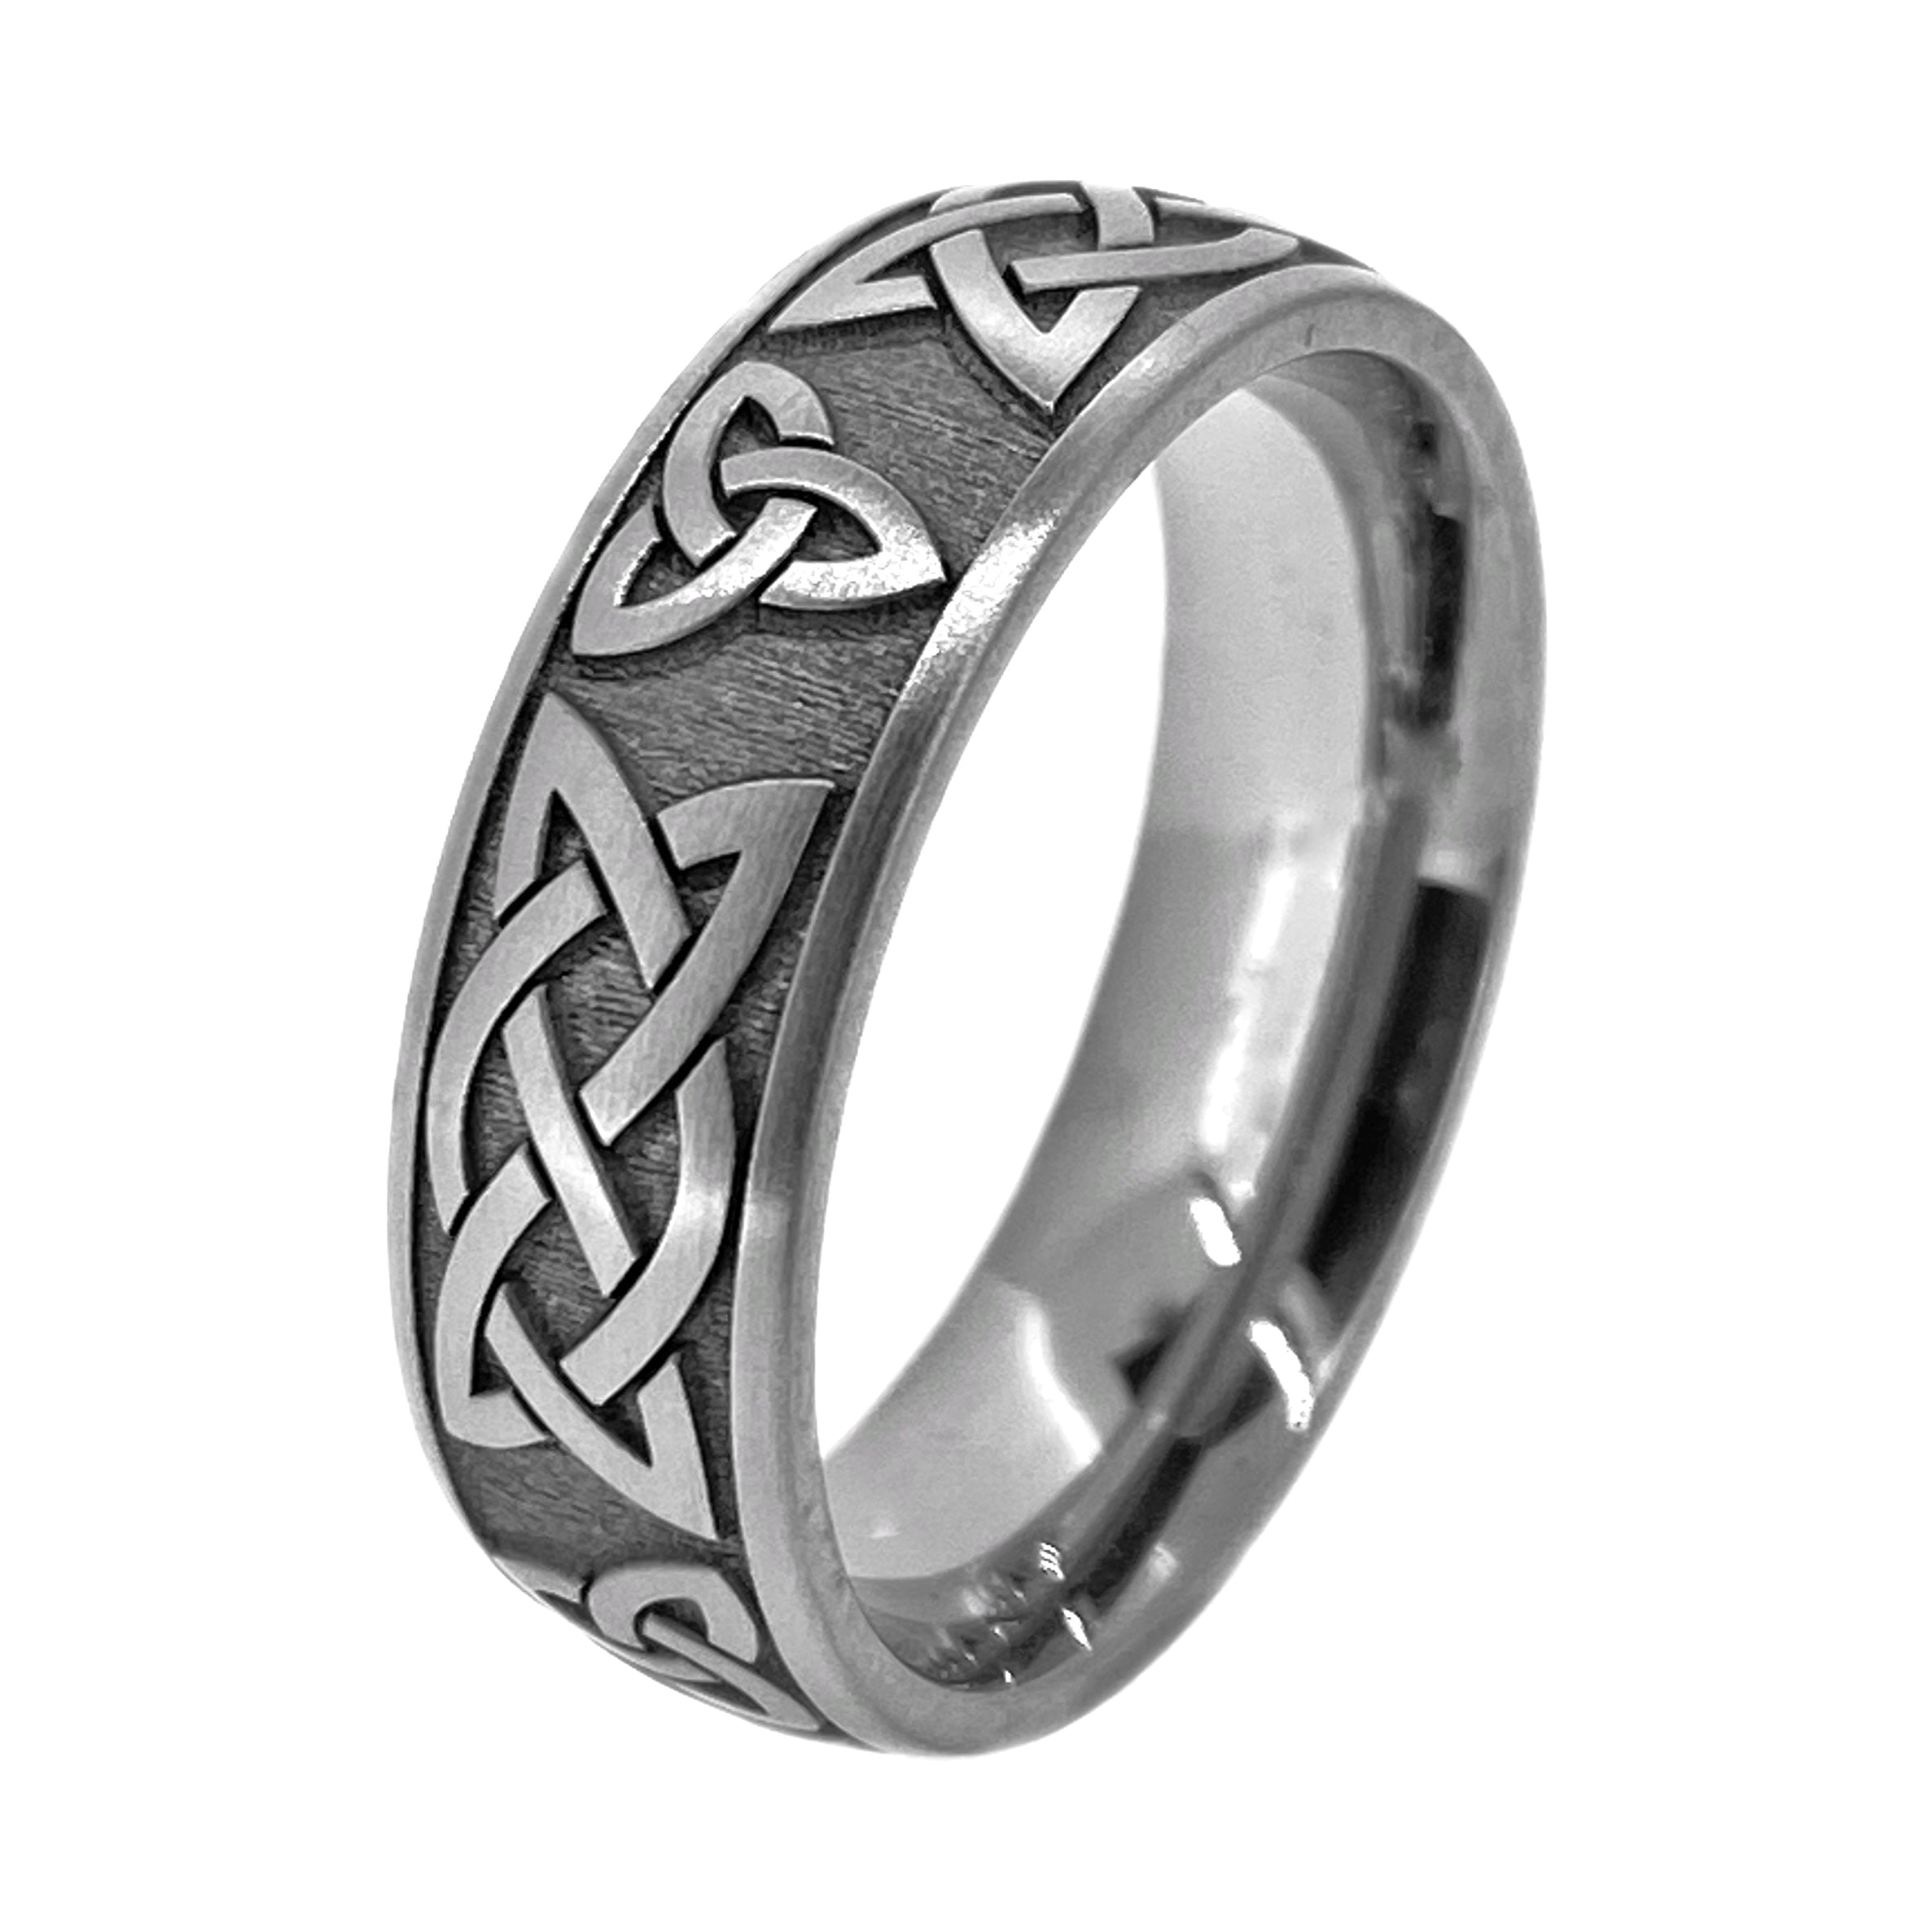 Custom Design Silver Rings - Men Rings - Women Rings - Made to order | eBay